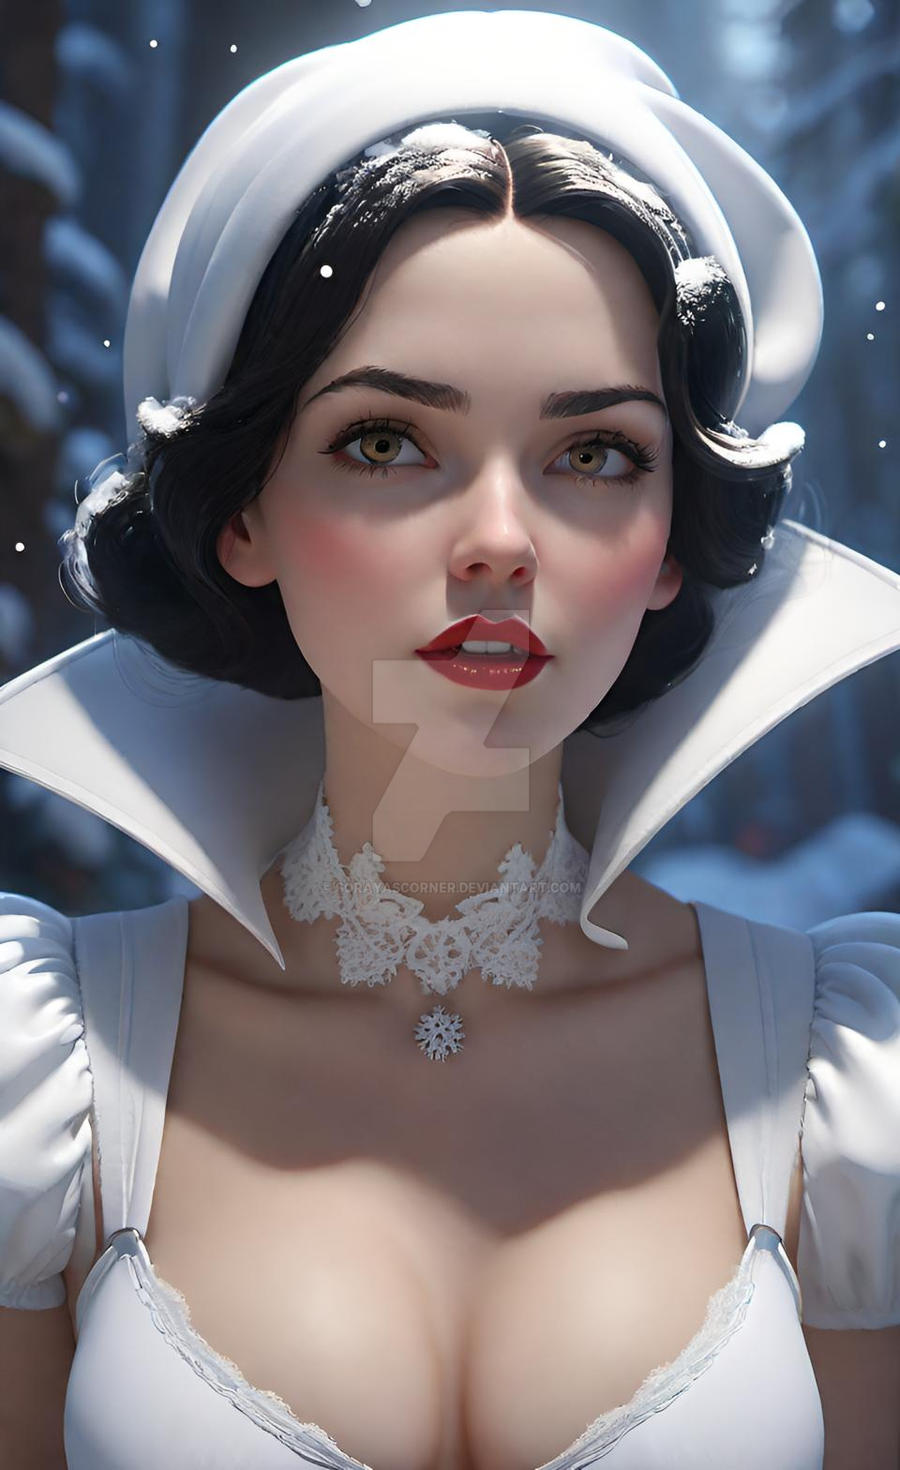 lingerie snow white in bralette HD digital art by SorayasCorner on  DeviantArt